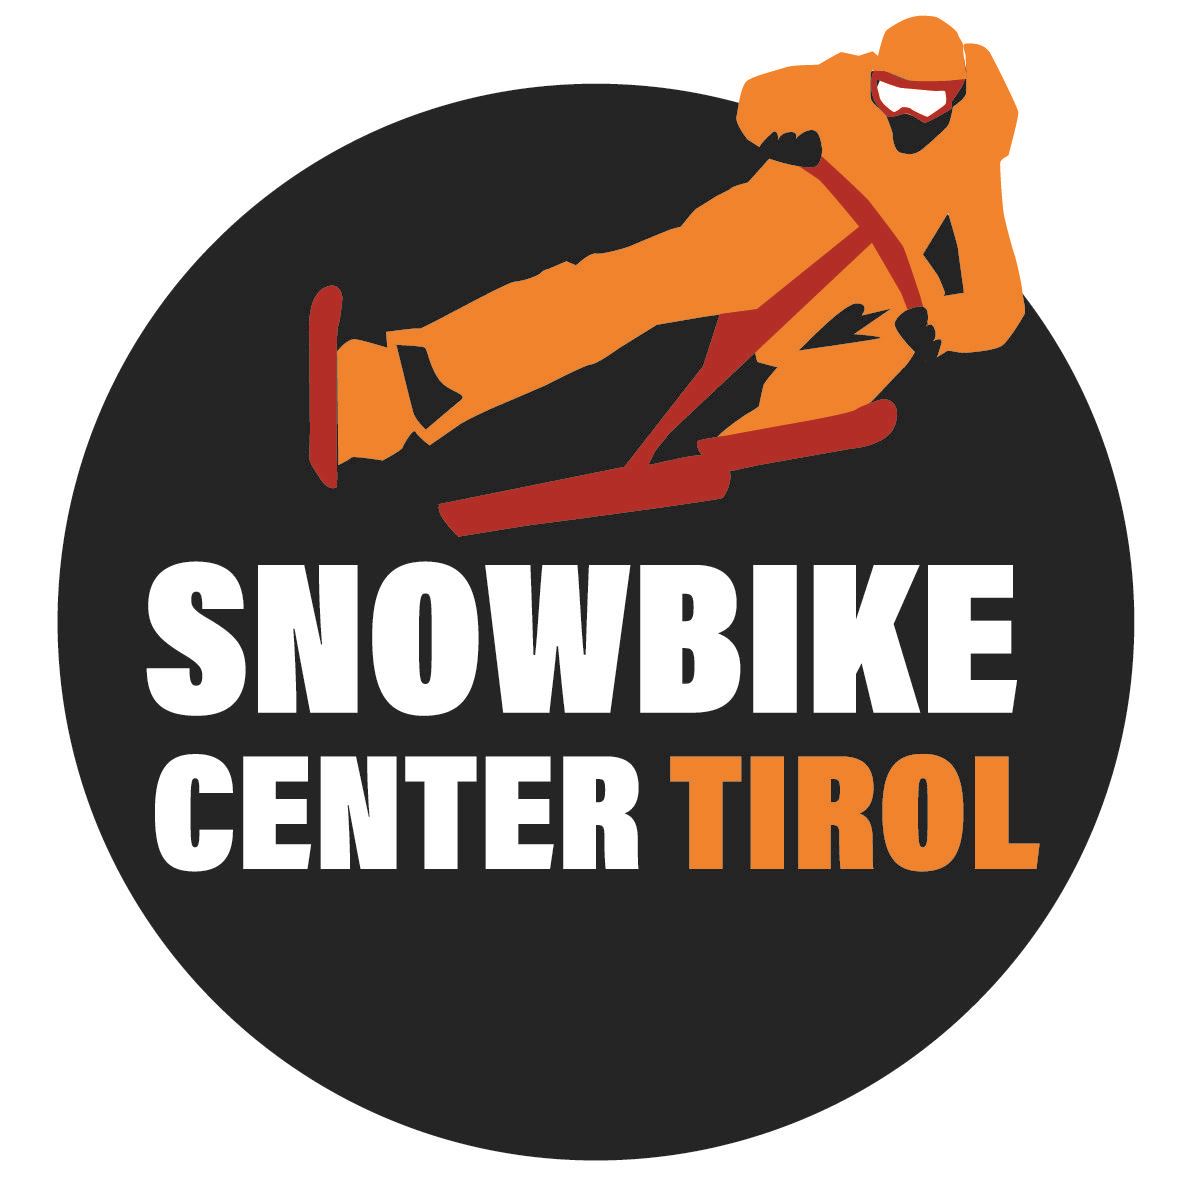 Snowbike Center Tirol